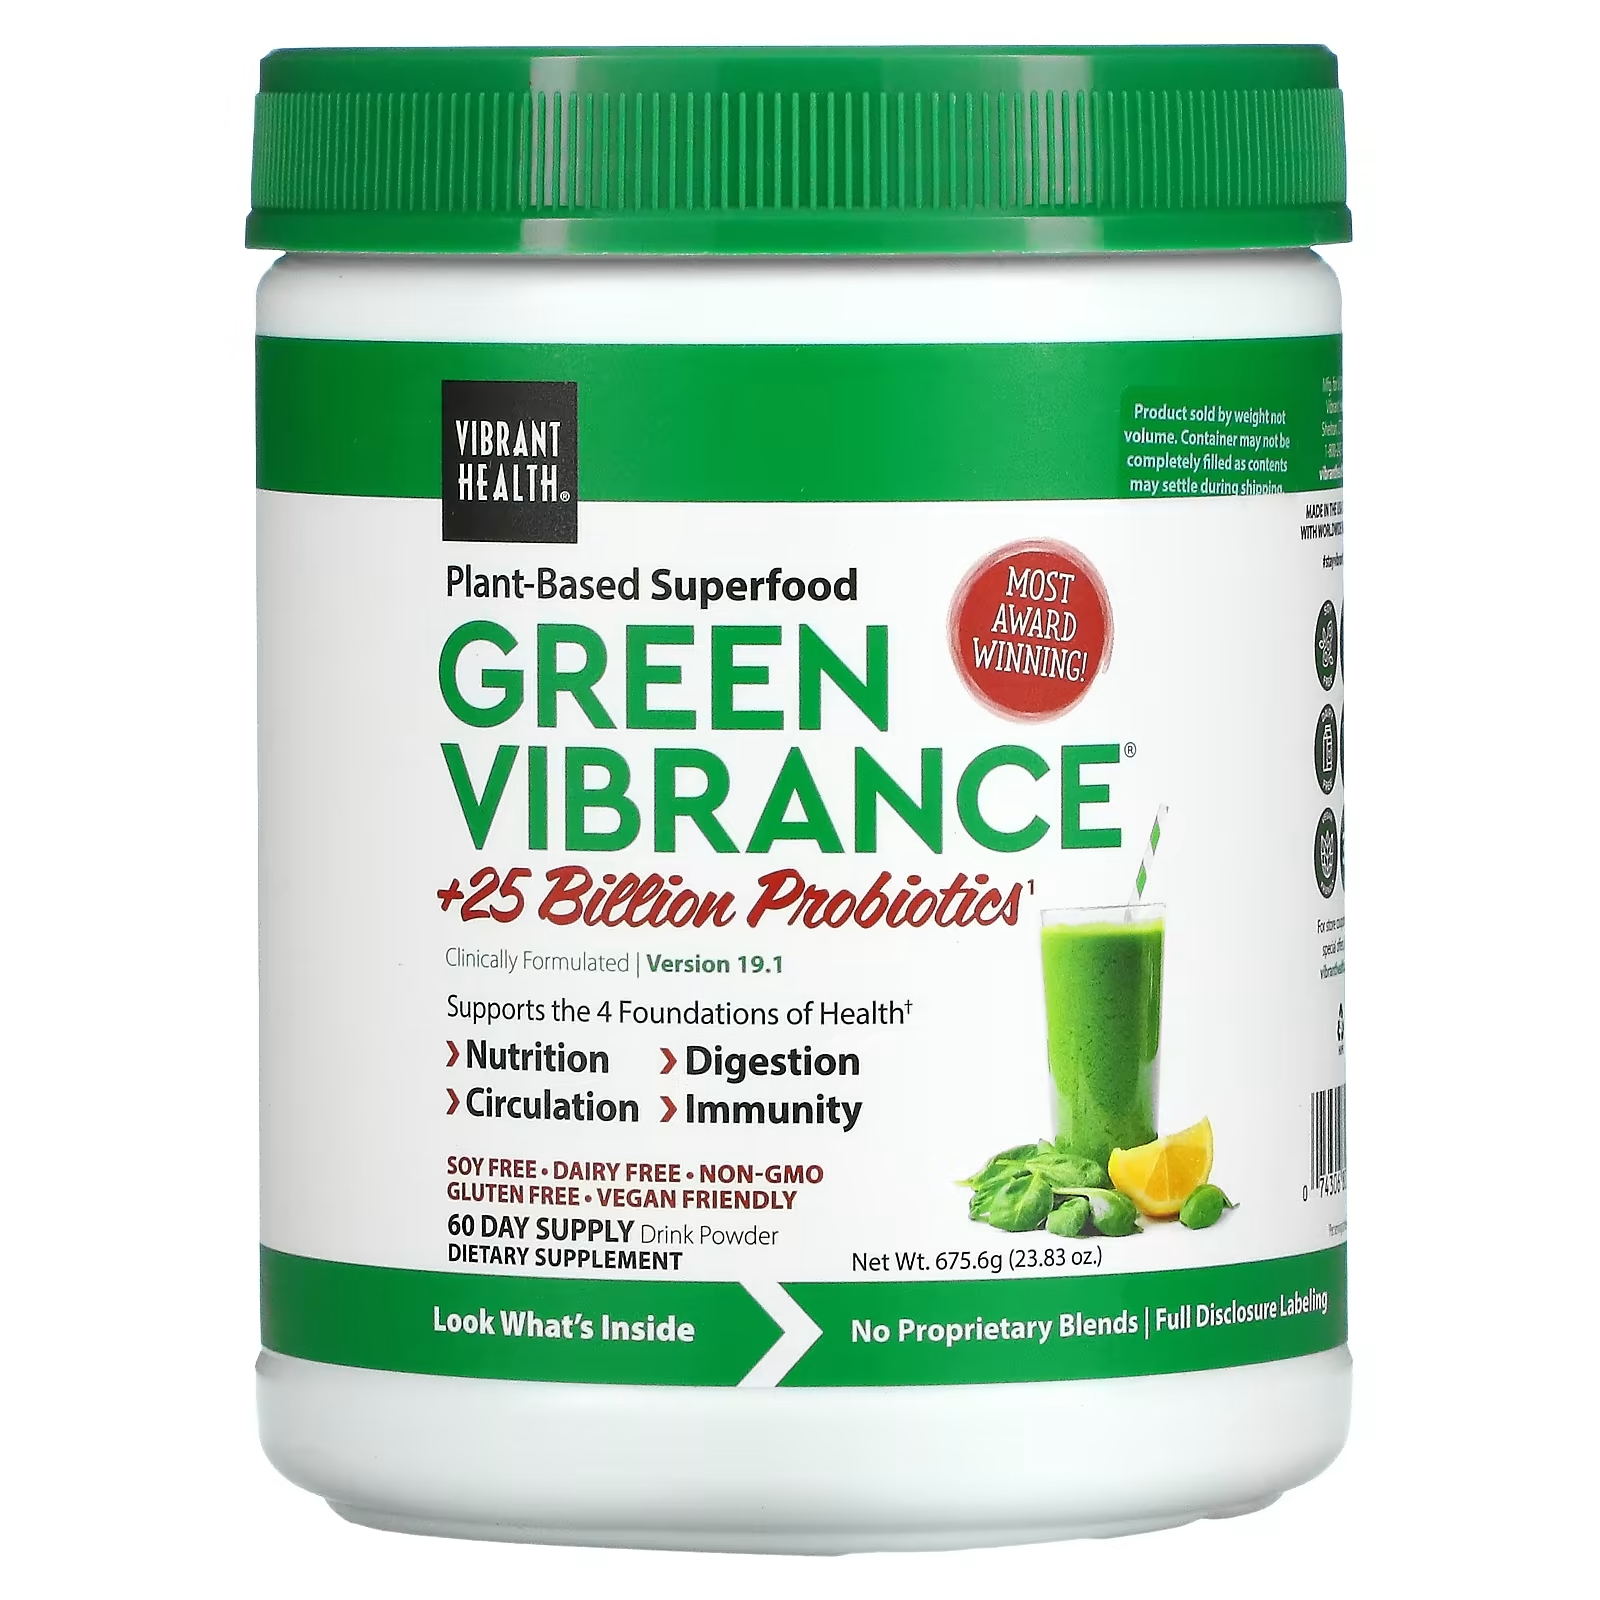 Пробиотики Vibrant Health Green Vibrance vibrant health green vibrance 25 млрд пробиотиков версия 17 0 35 27 унц 1 кг